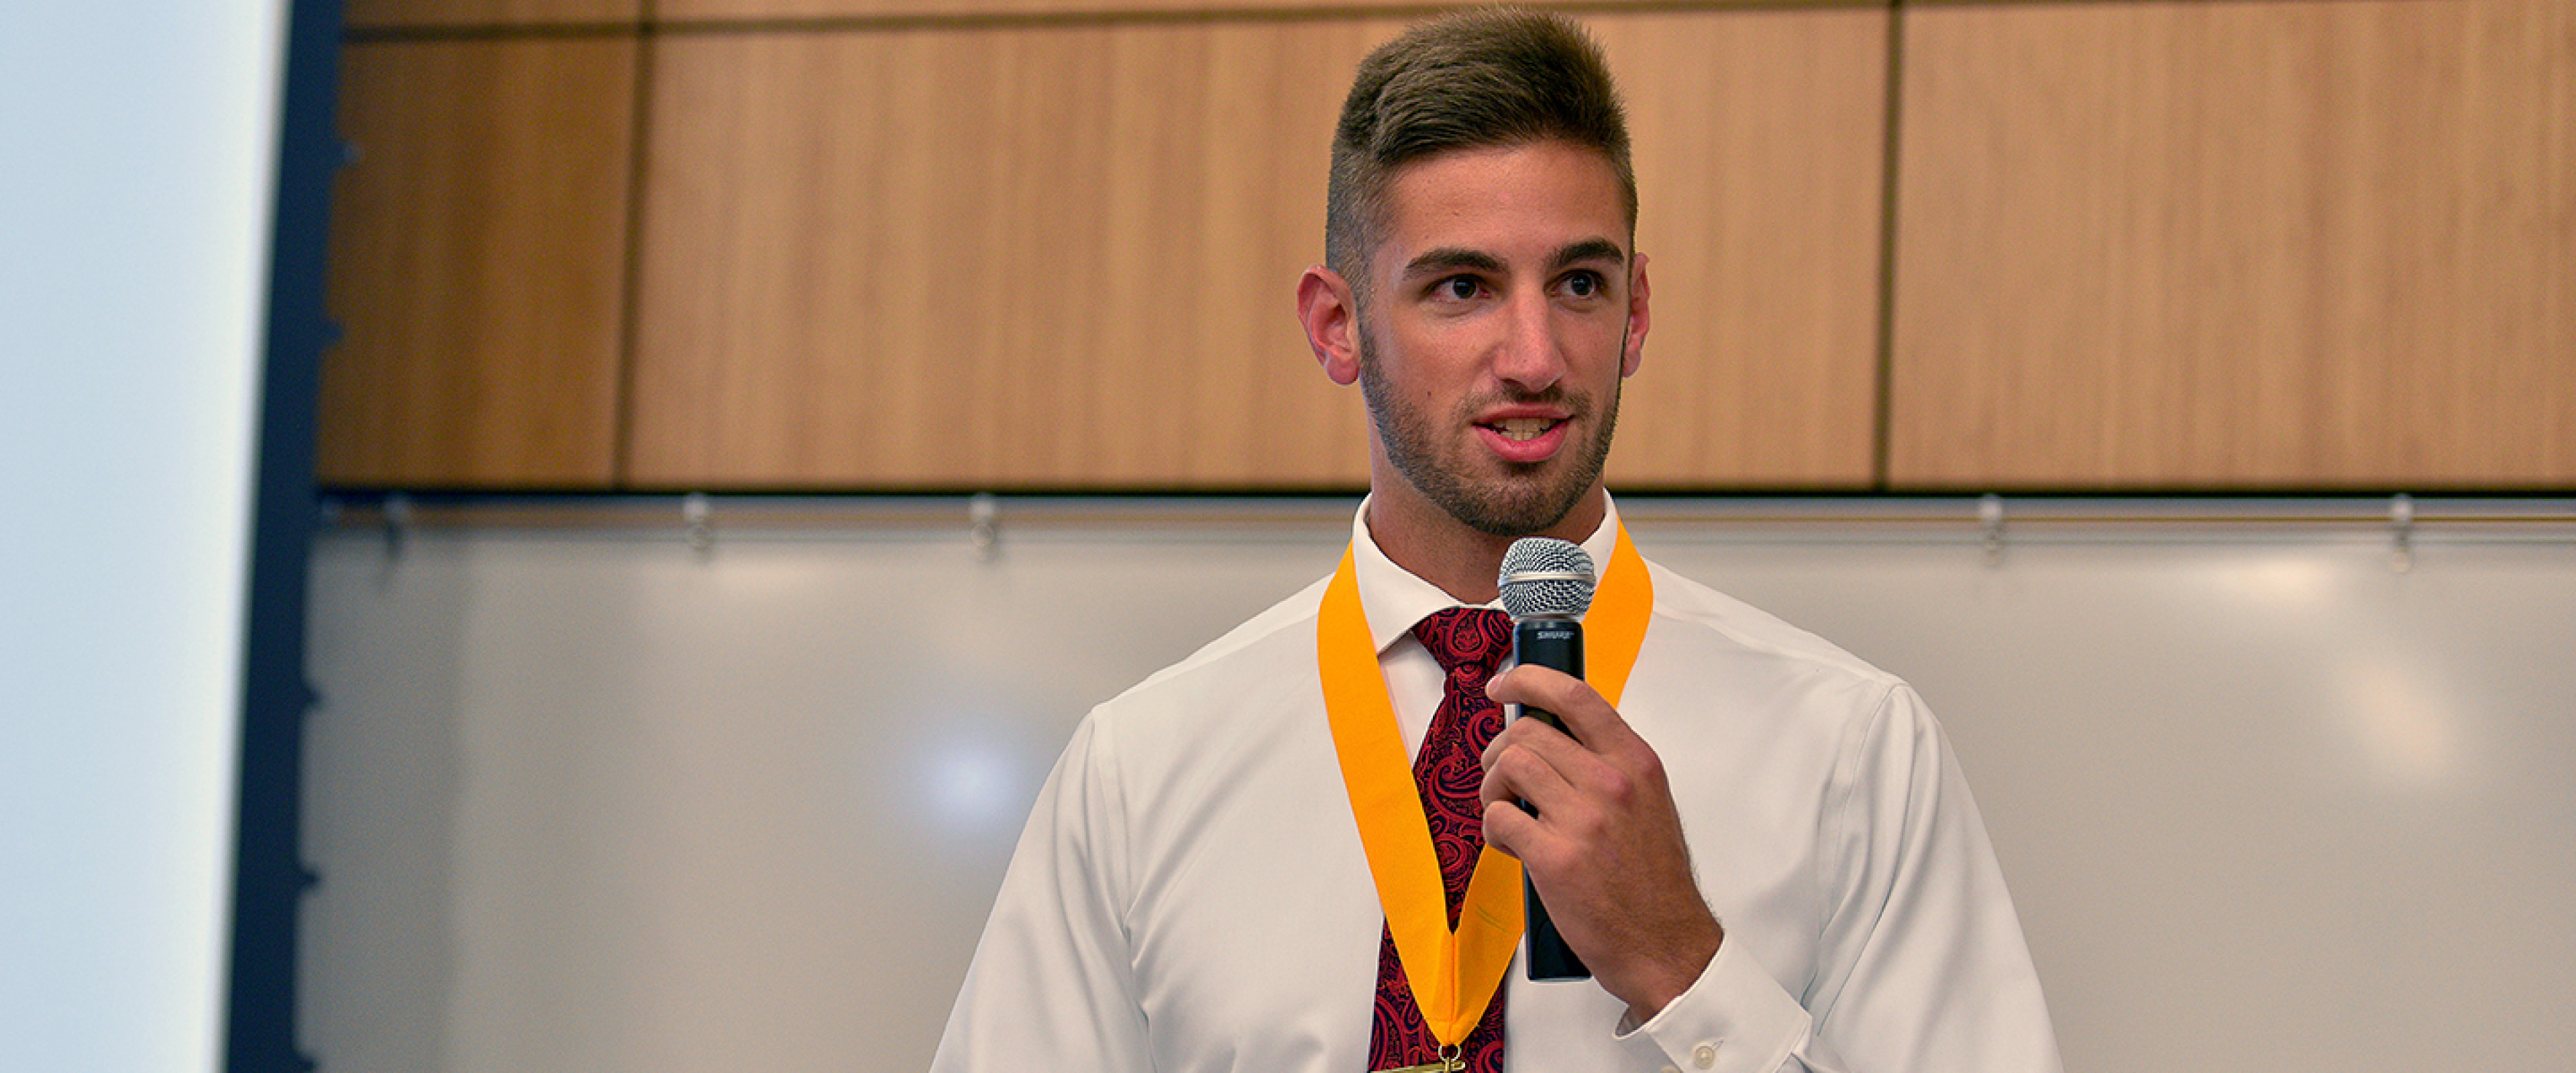 Male Medallion student speaking.